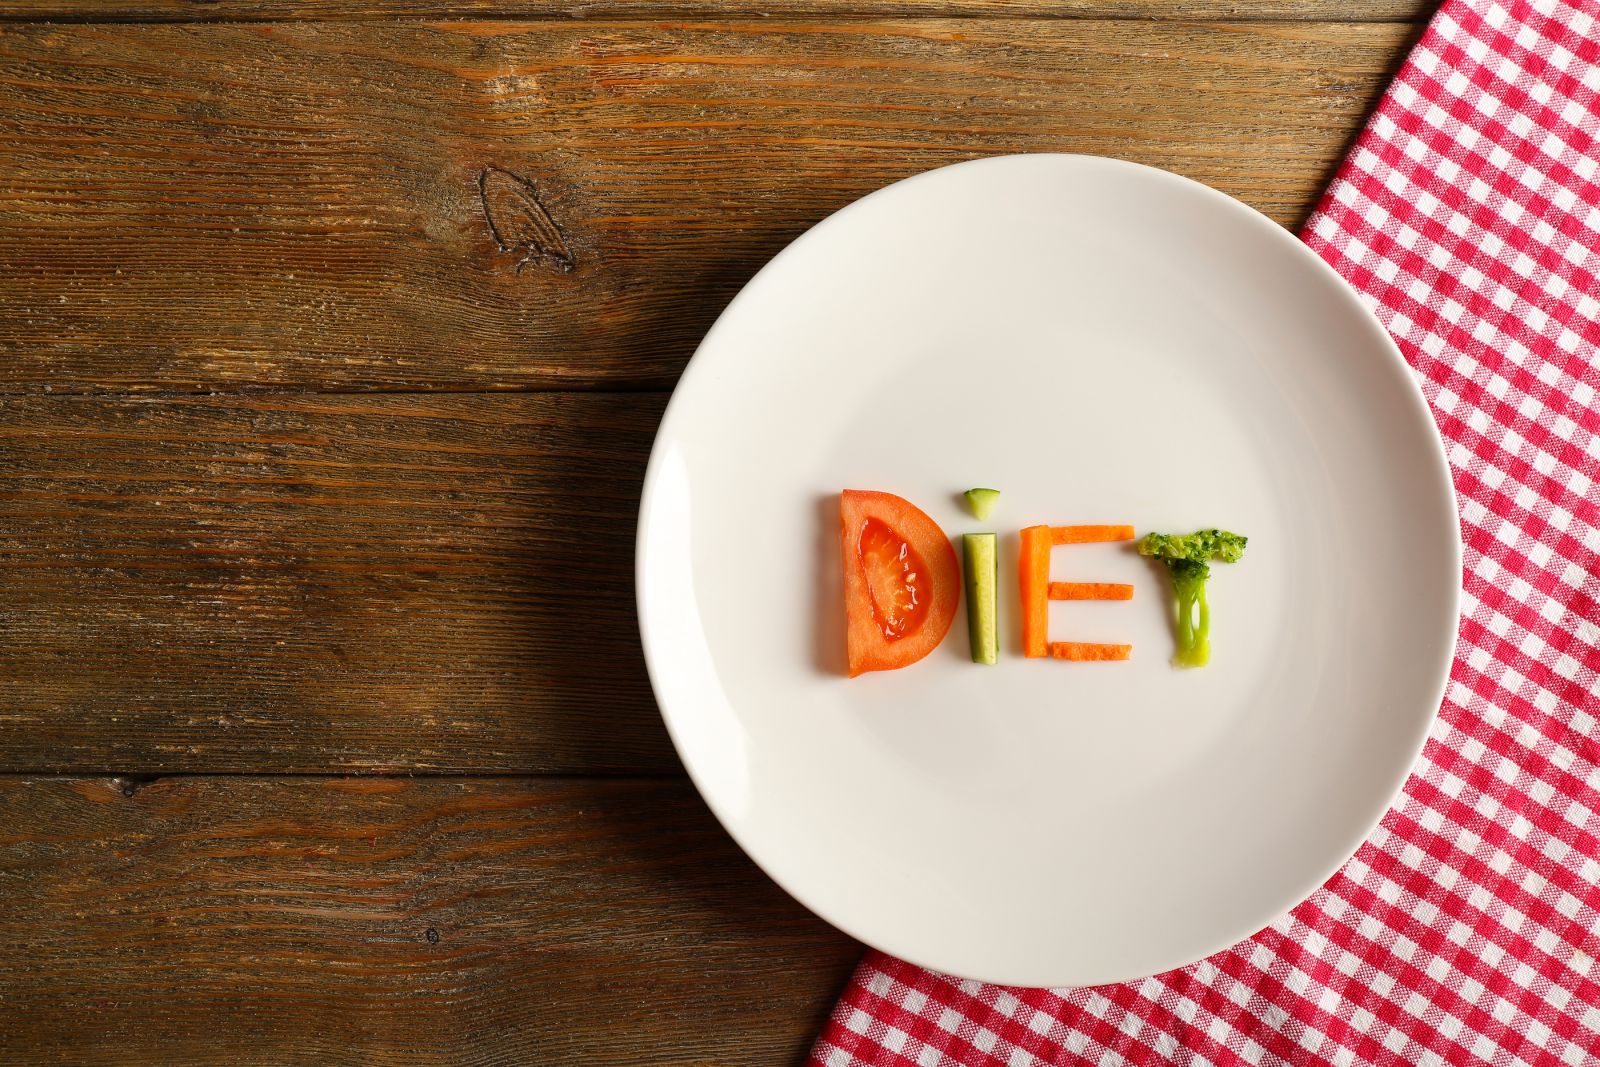 15 egészséges diéta a tartós fogyásért - Fogyókúra | Femina